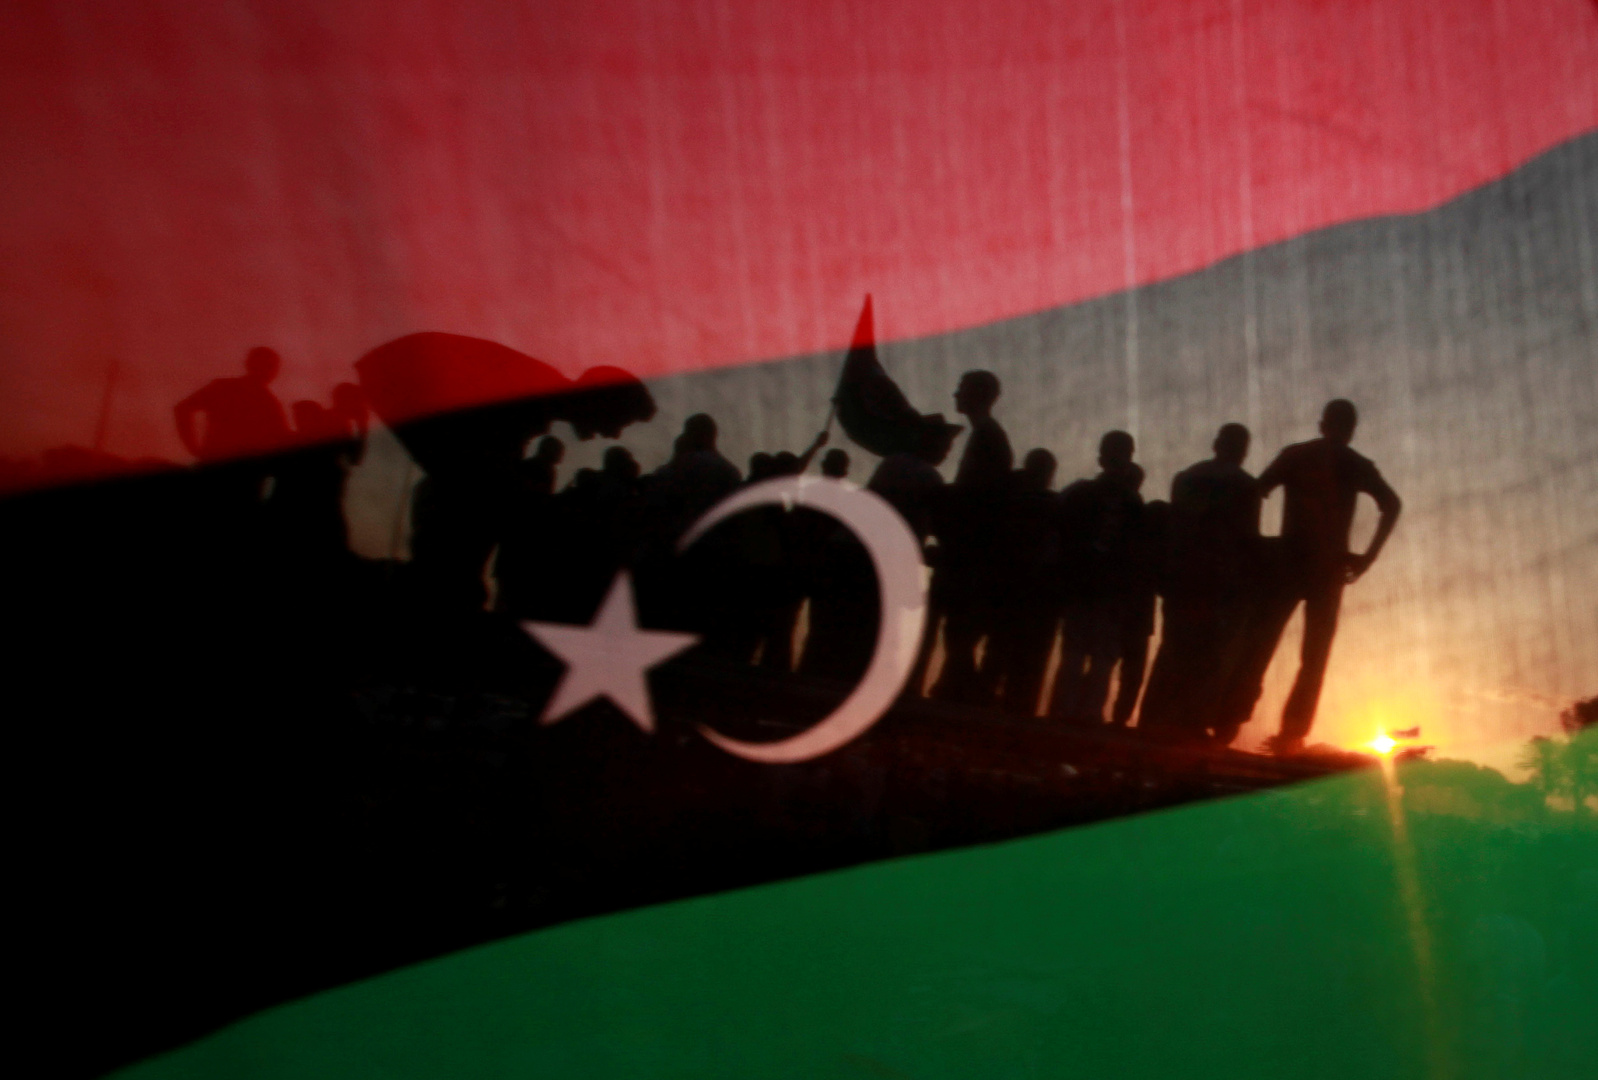 الأمم المتحدة: وجود عدد كبير من اللاعبين الخارجيين في ليبيا يهدد بحرب إقليمية